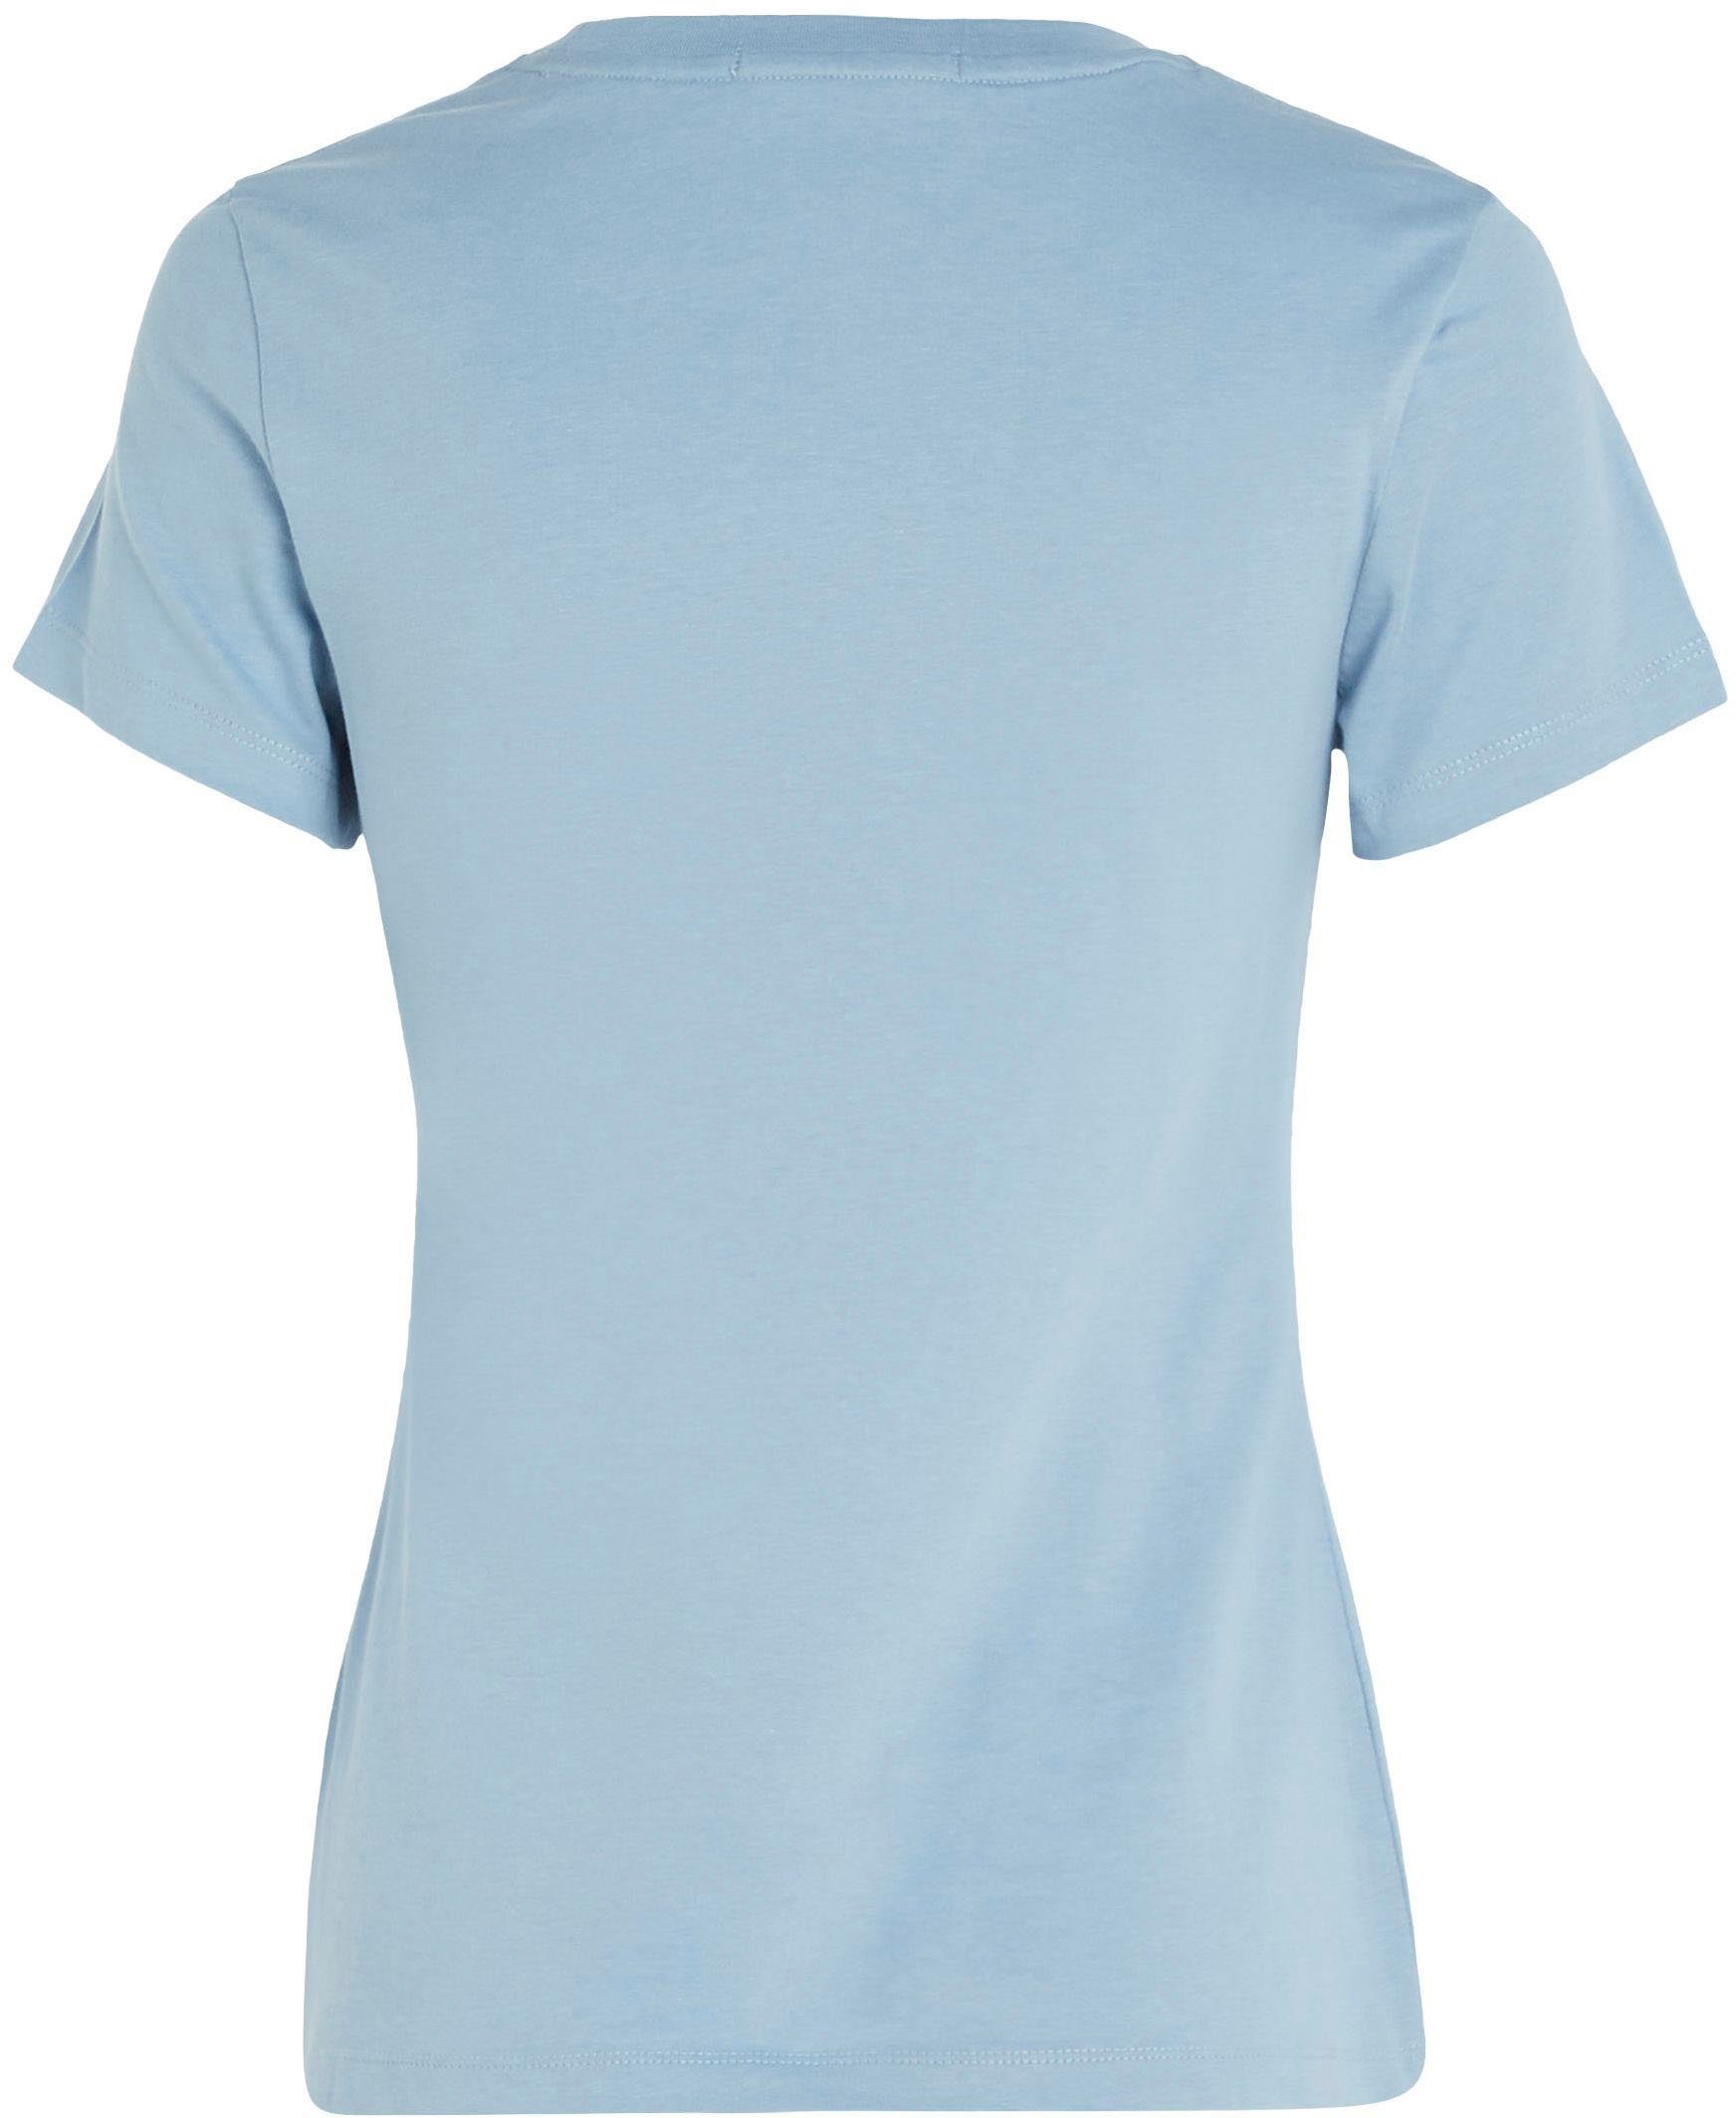 Klein MONOLOGO Rundhalsausschnitt MICRO mit T-Shirt FIT SLIM Calvin TEE Jeans Blue Iceland